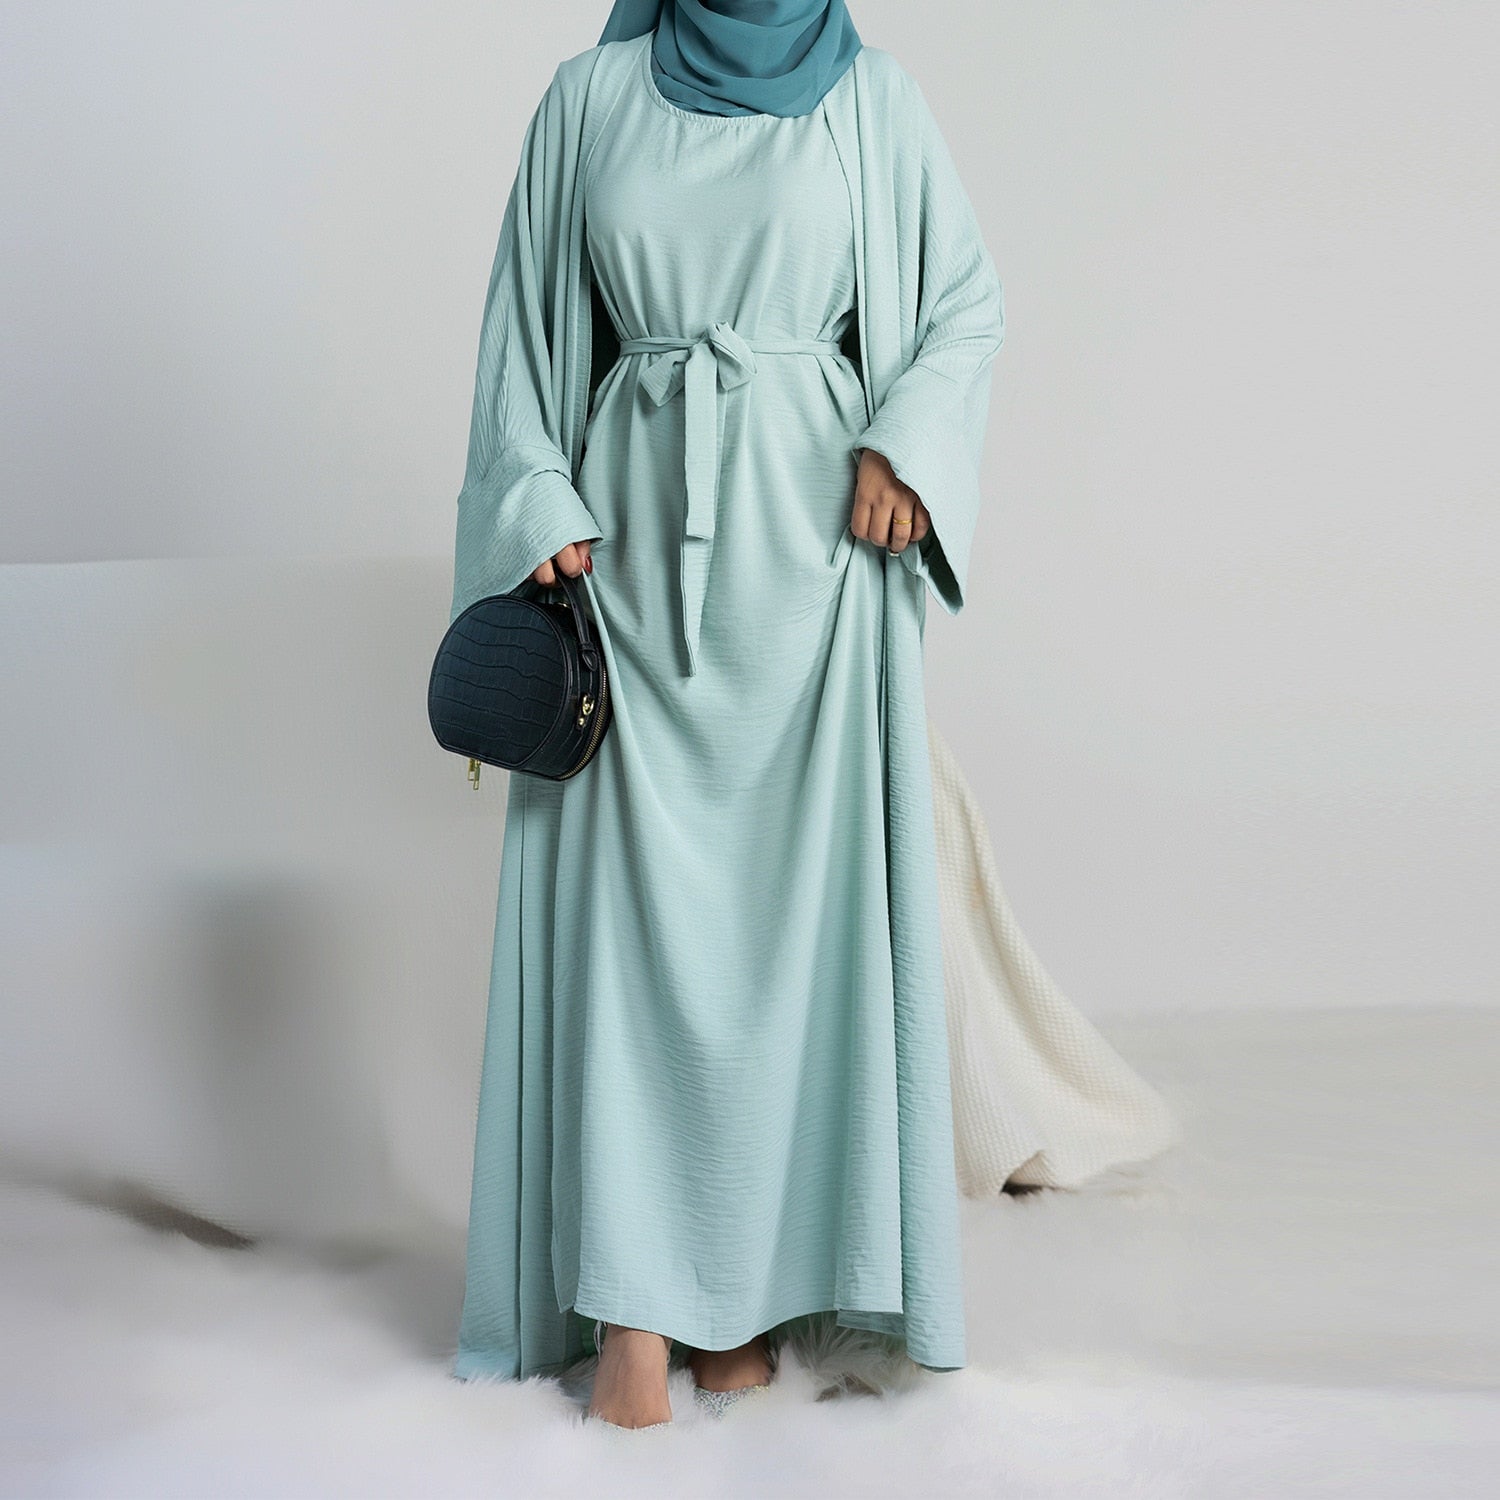 2 Piece Abaya Kimono Matching Muslim Set Ramadan Abayas